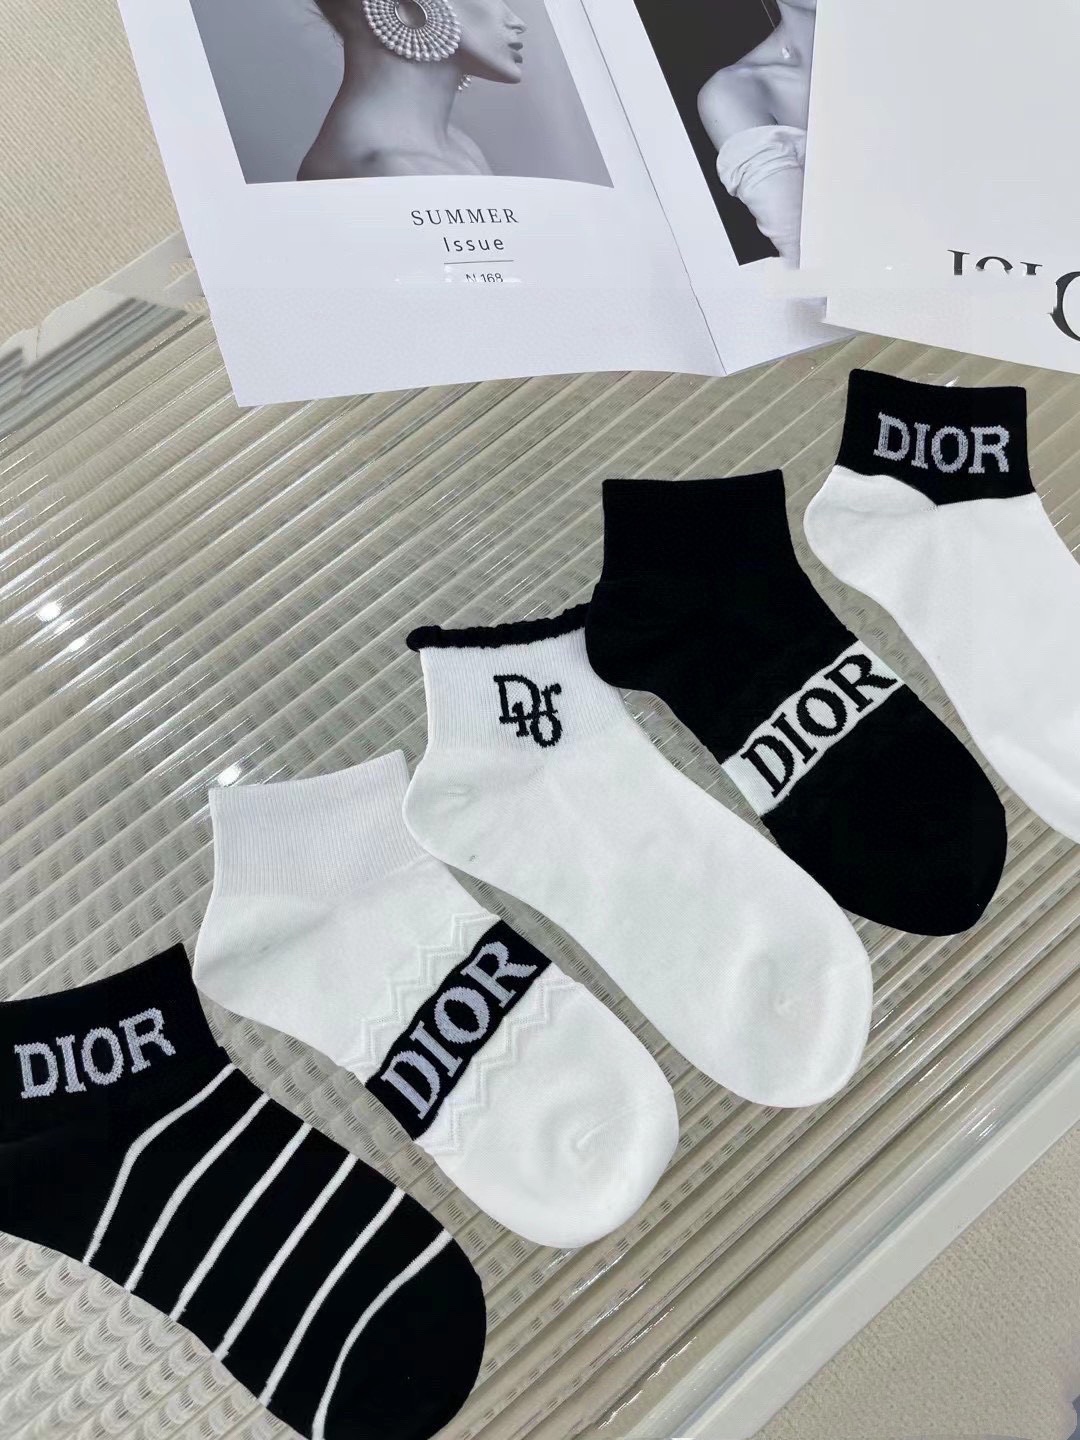 配包装一盒五双欧美大牌Dior迪奥好看到爆炸欧美大牌船袜男女款潮人必不能少的专柜代购品质高筒袜子搭配起来